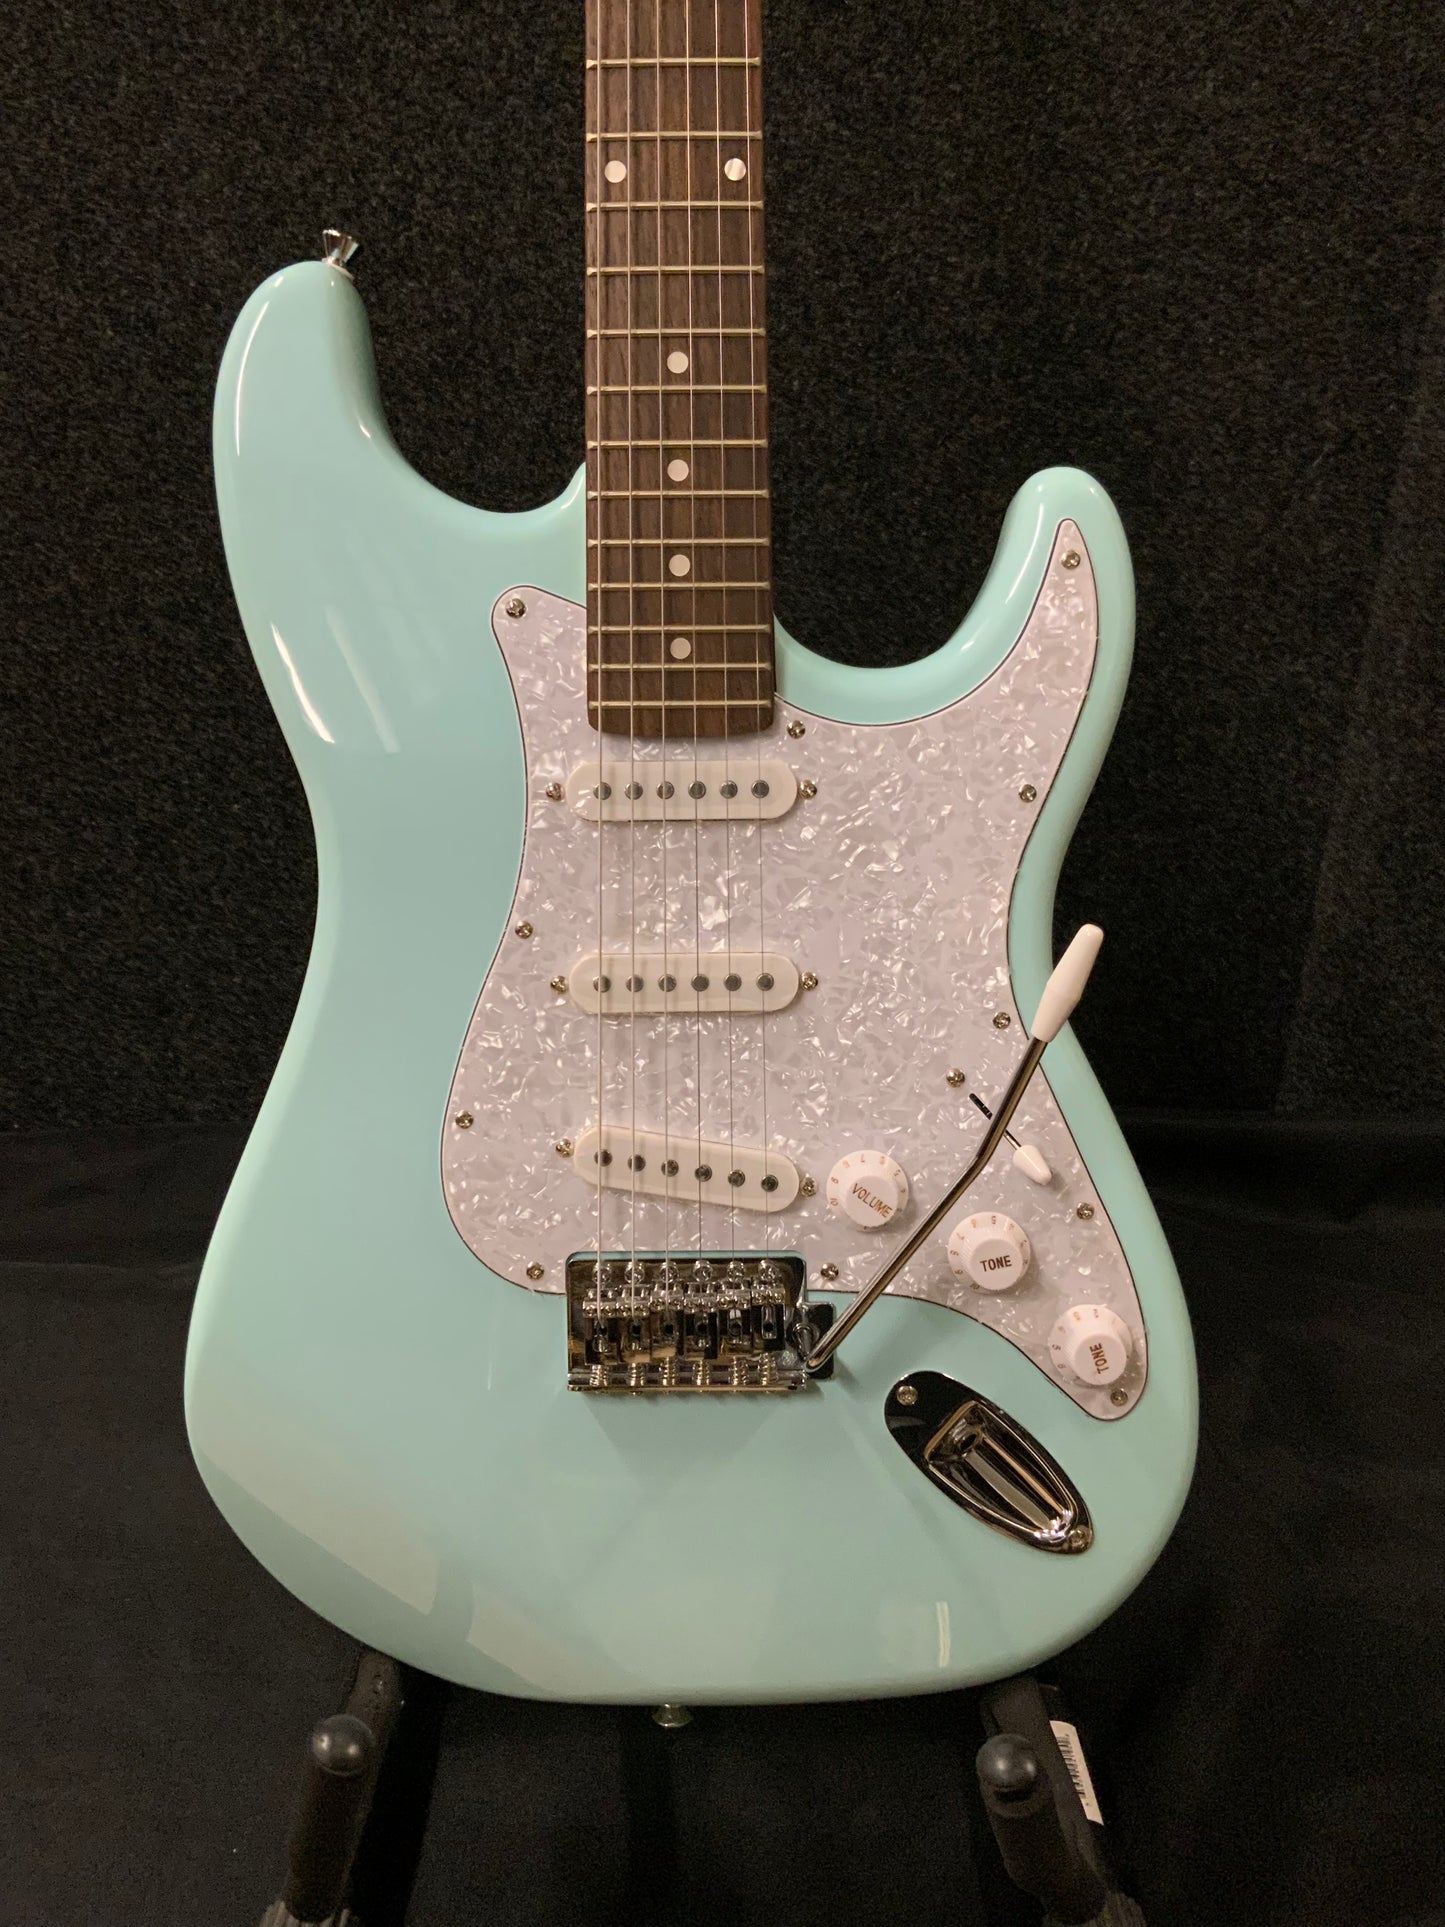 Nashville Guitar Works Strat Style Electric Guitar - Light Blue